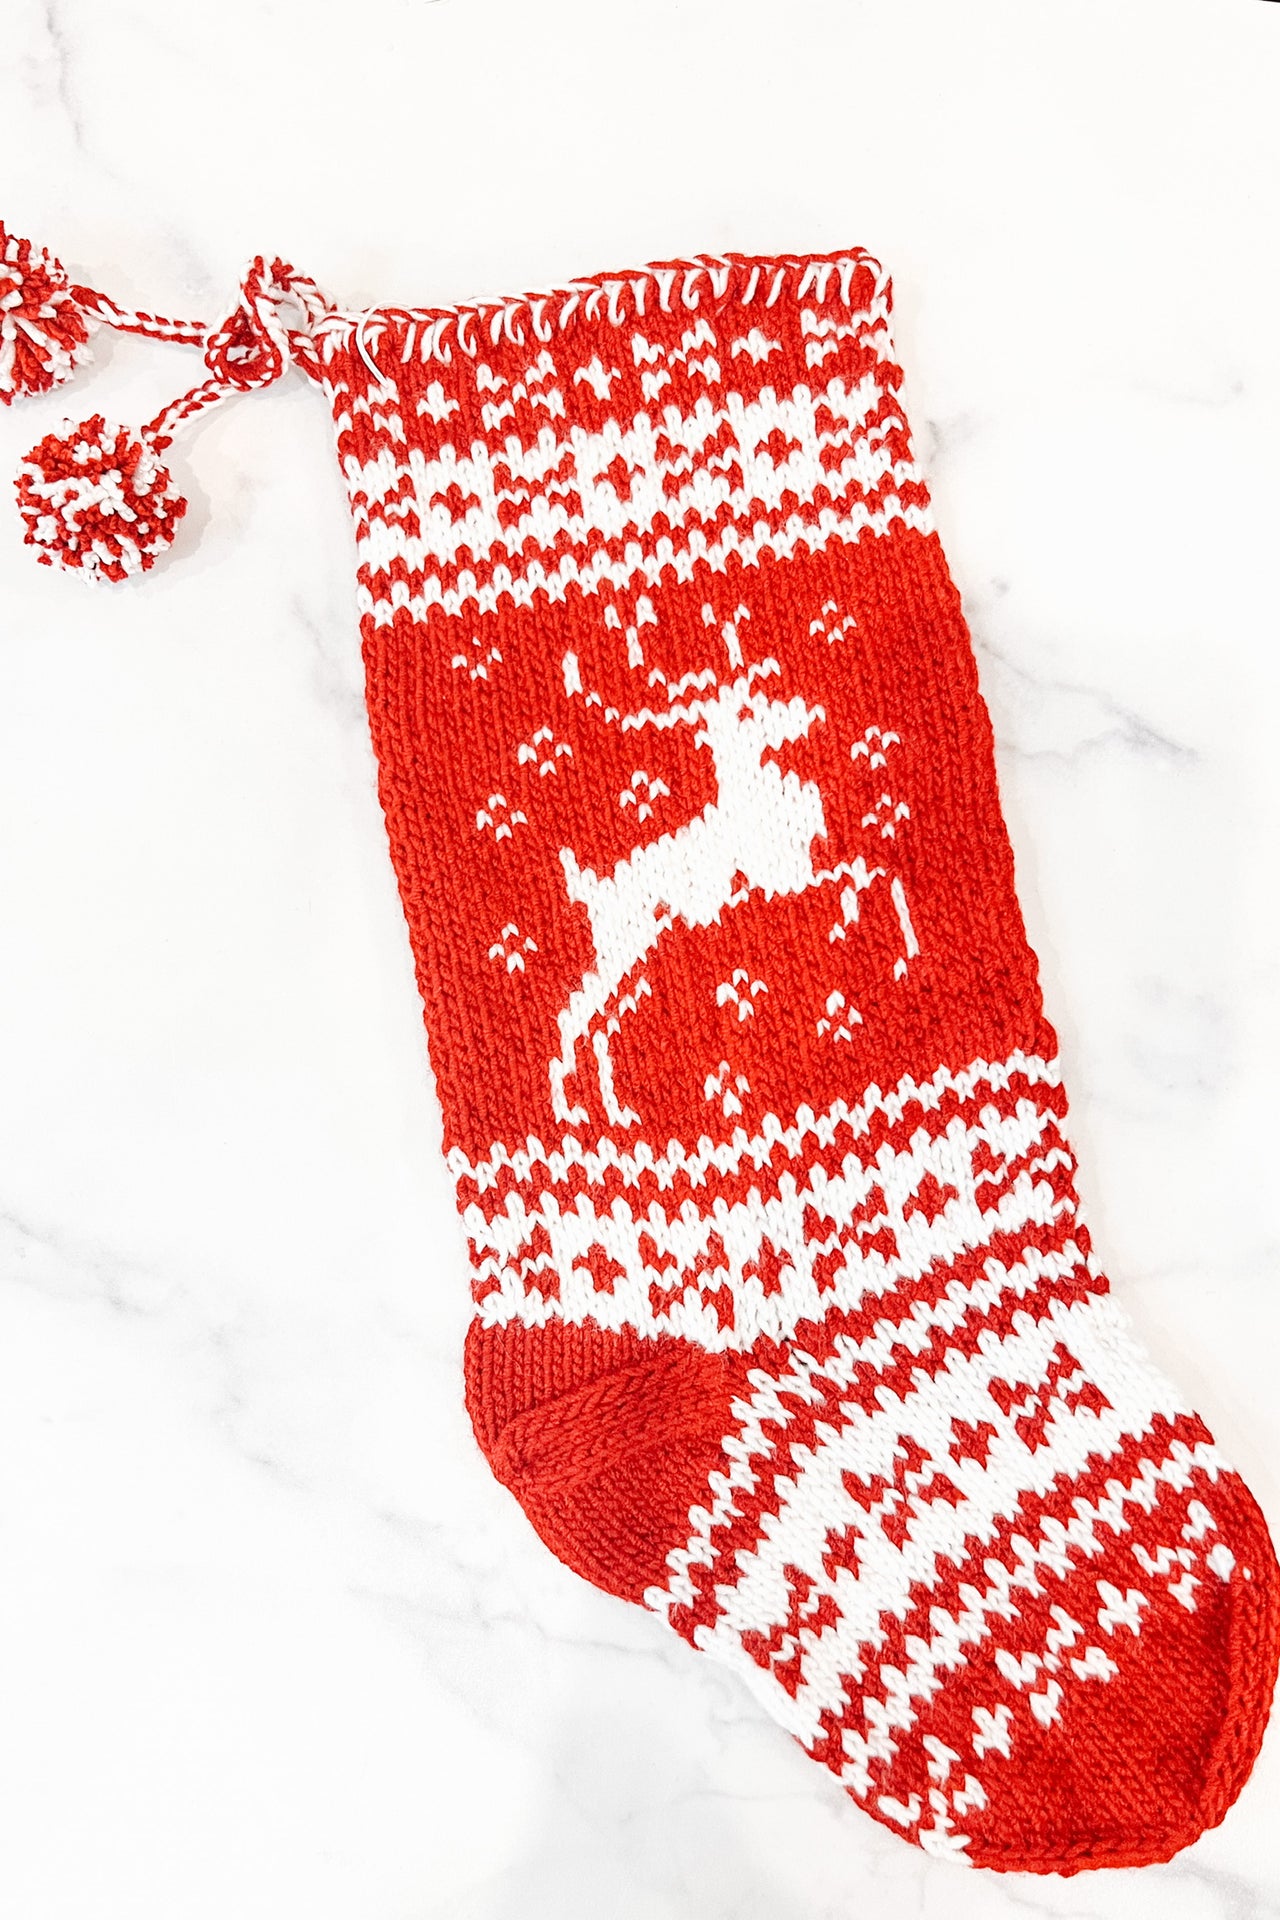 Azerbaijani Christmas Stockings